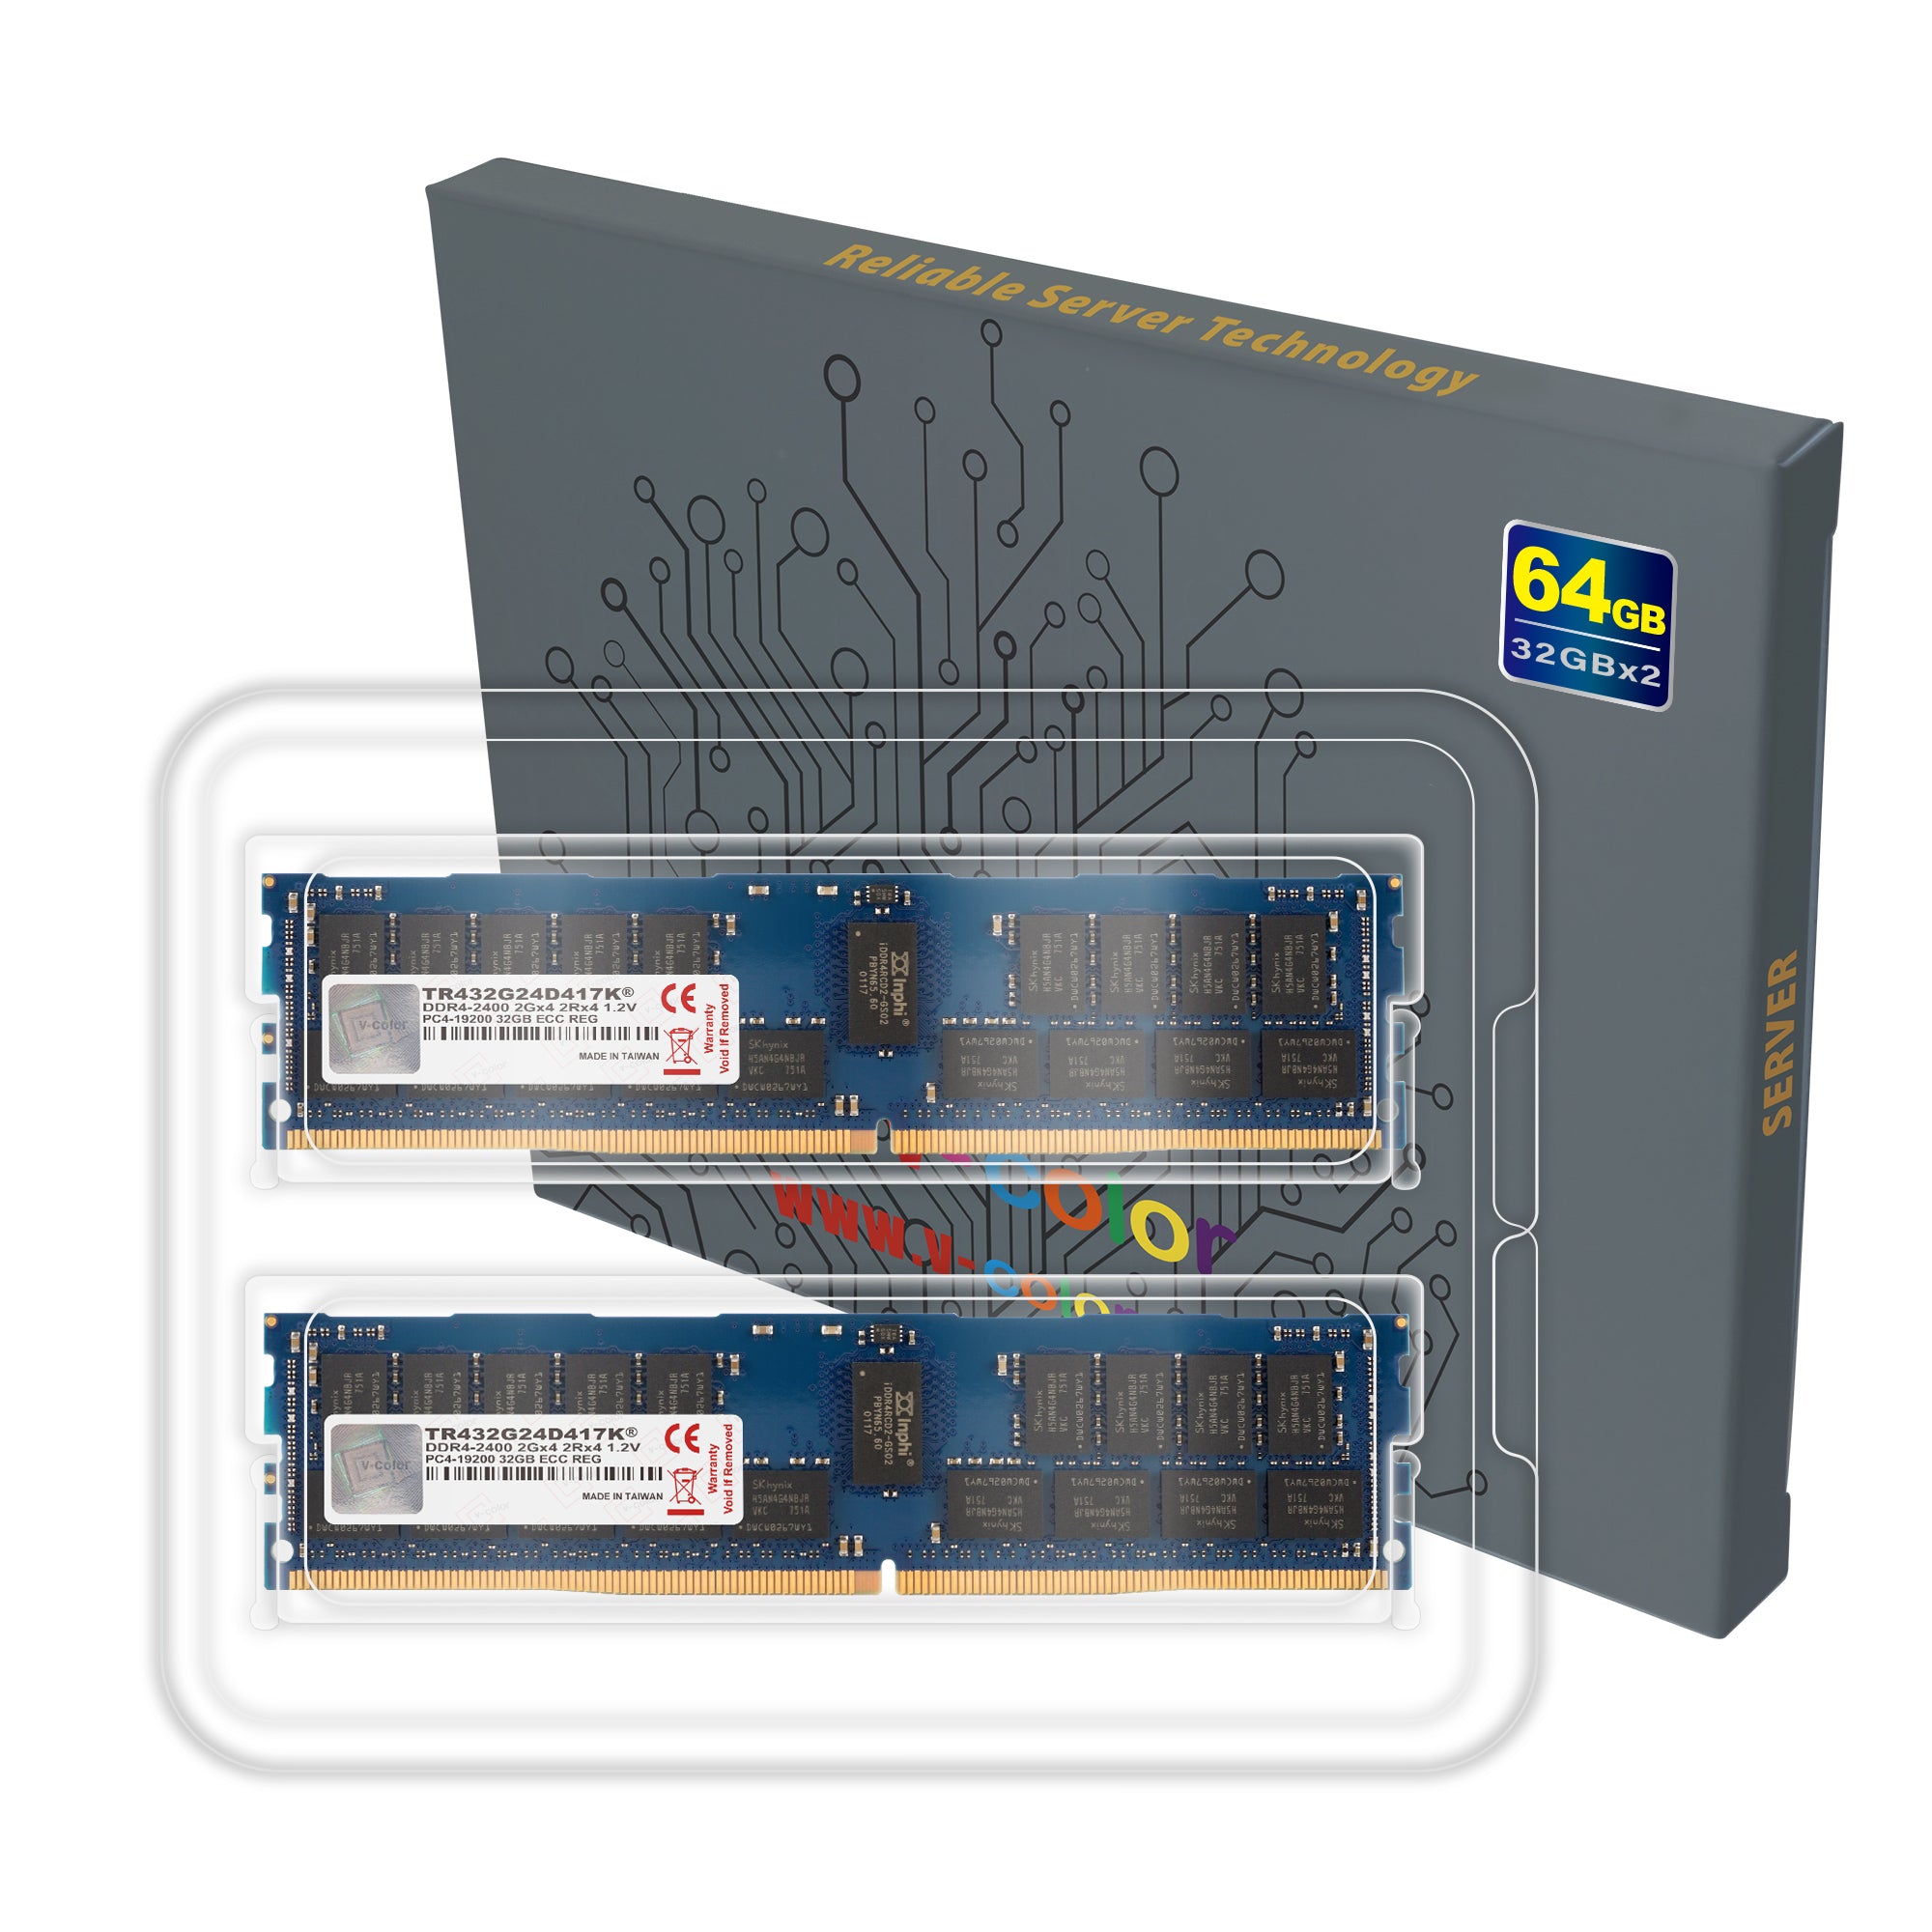 サーバ用メモリ SKhynix 16GB DDR4-2400 RDIMM